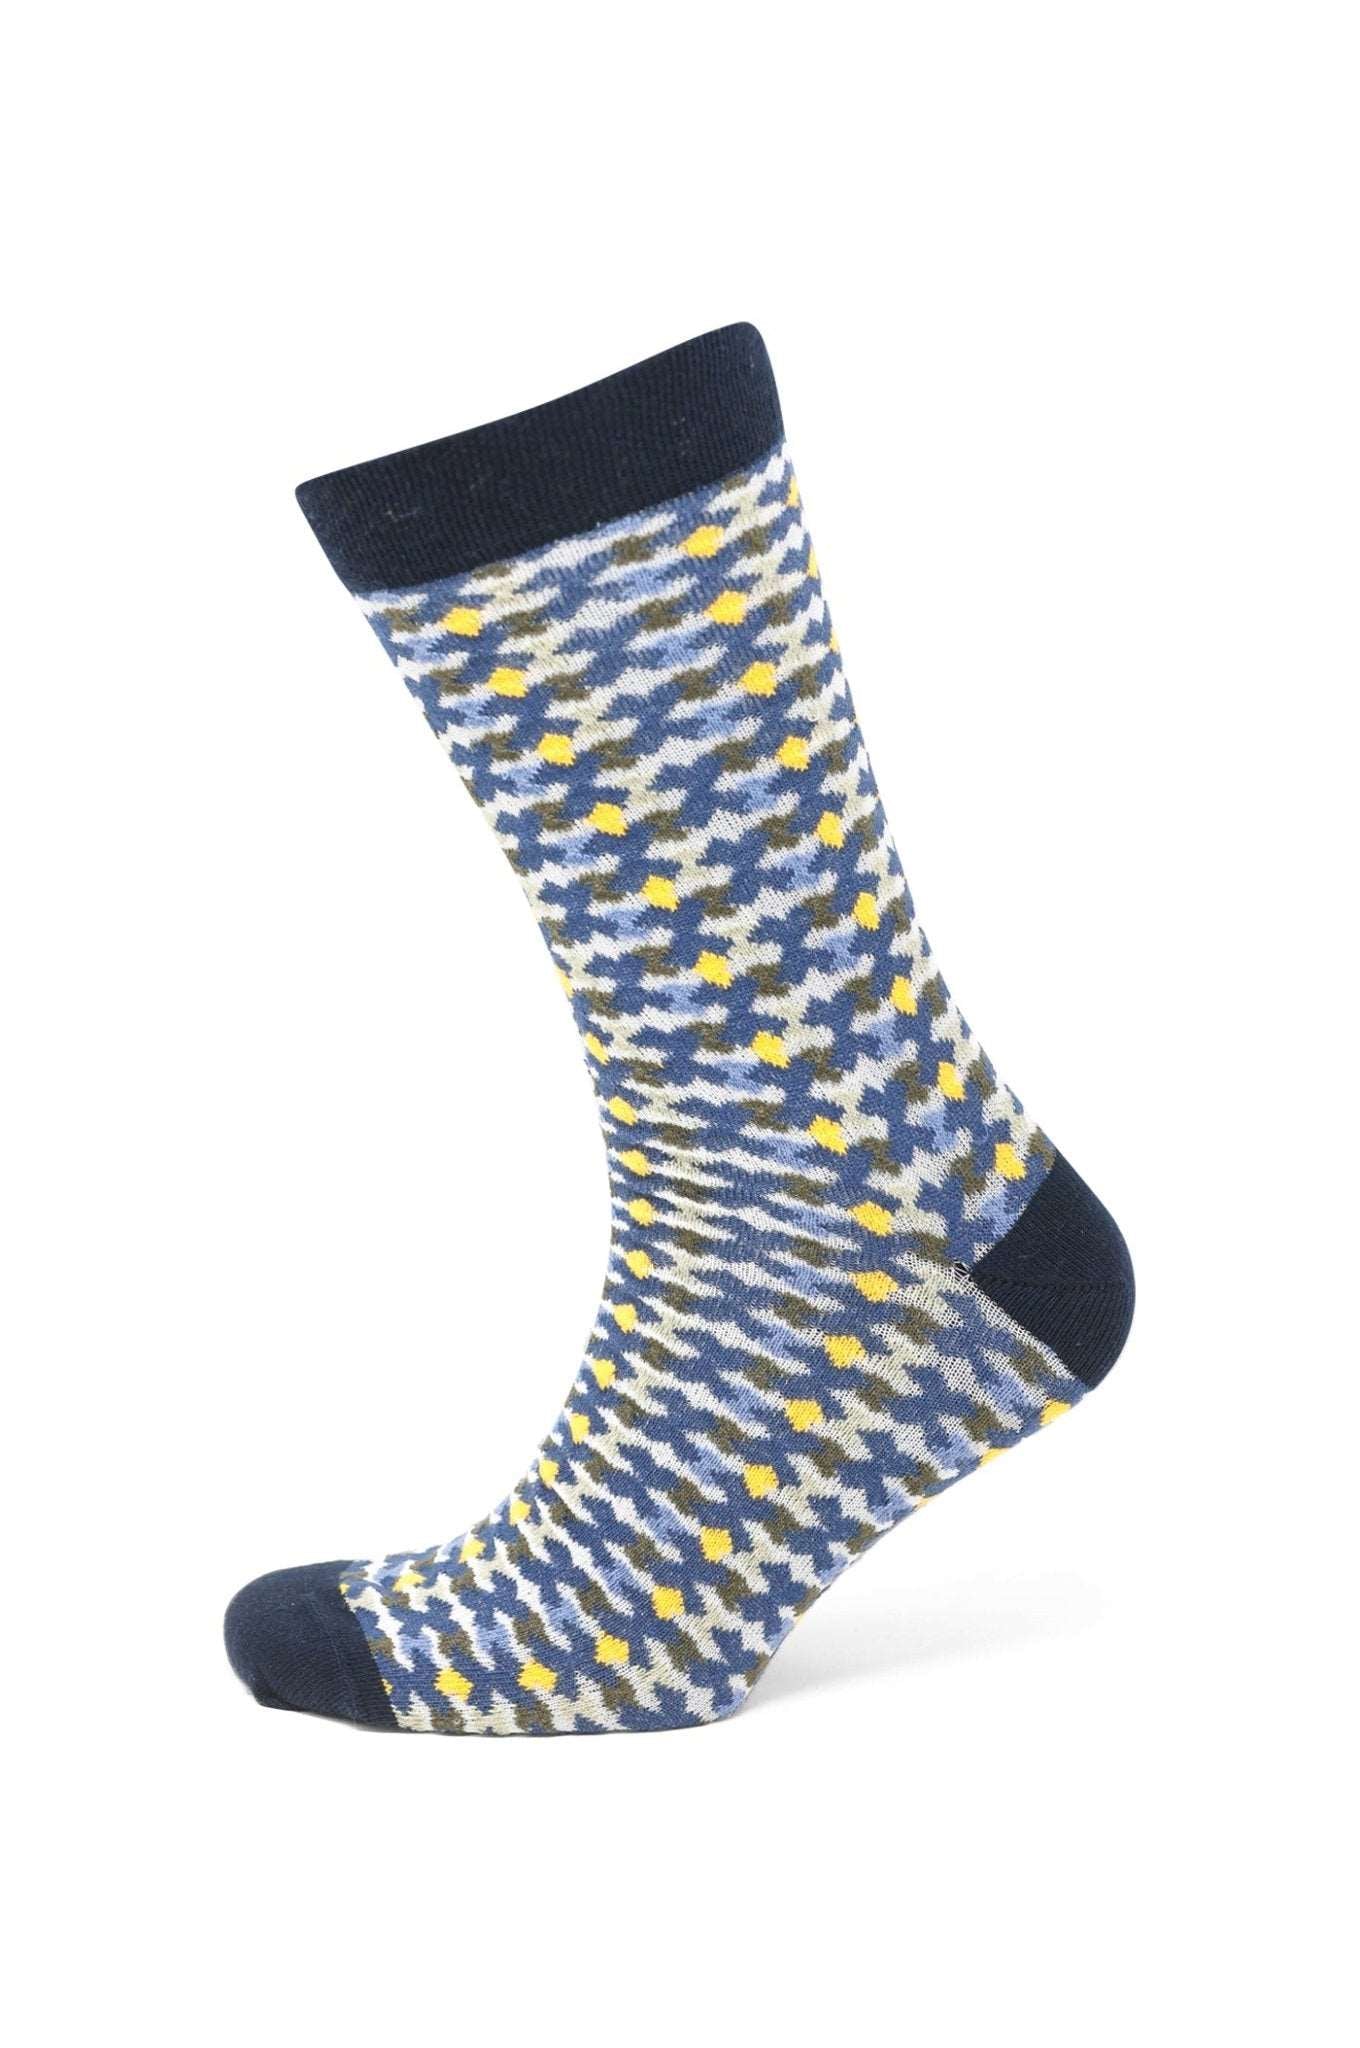 Modische Socke mit Muster - Blau/Gelb - REAL GUYS